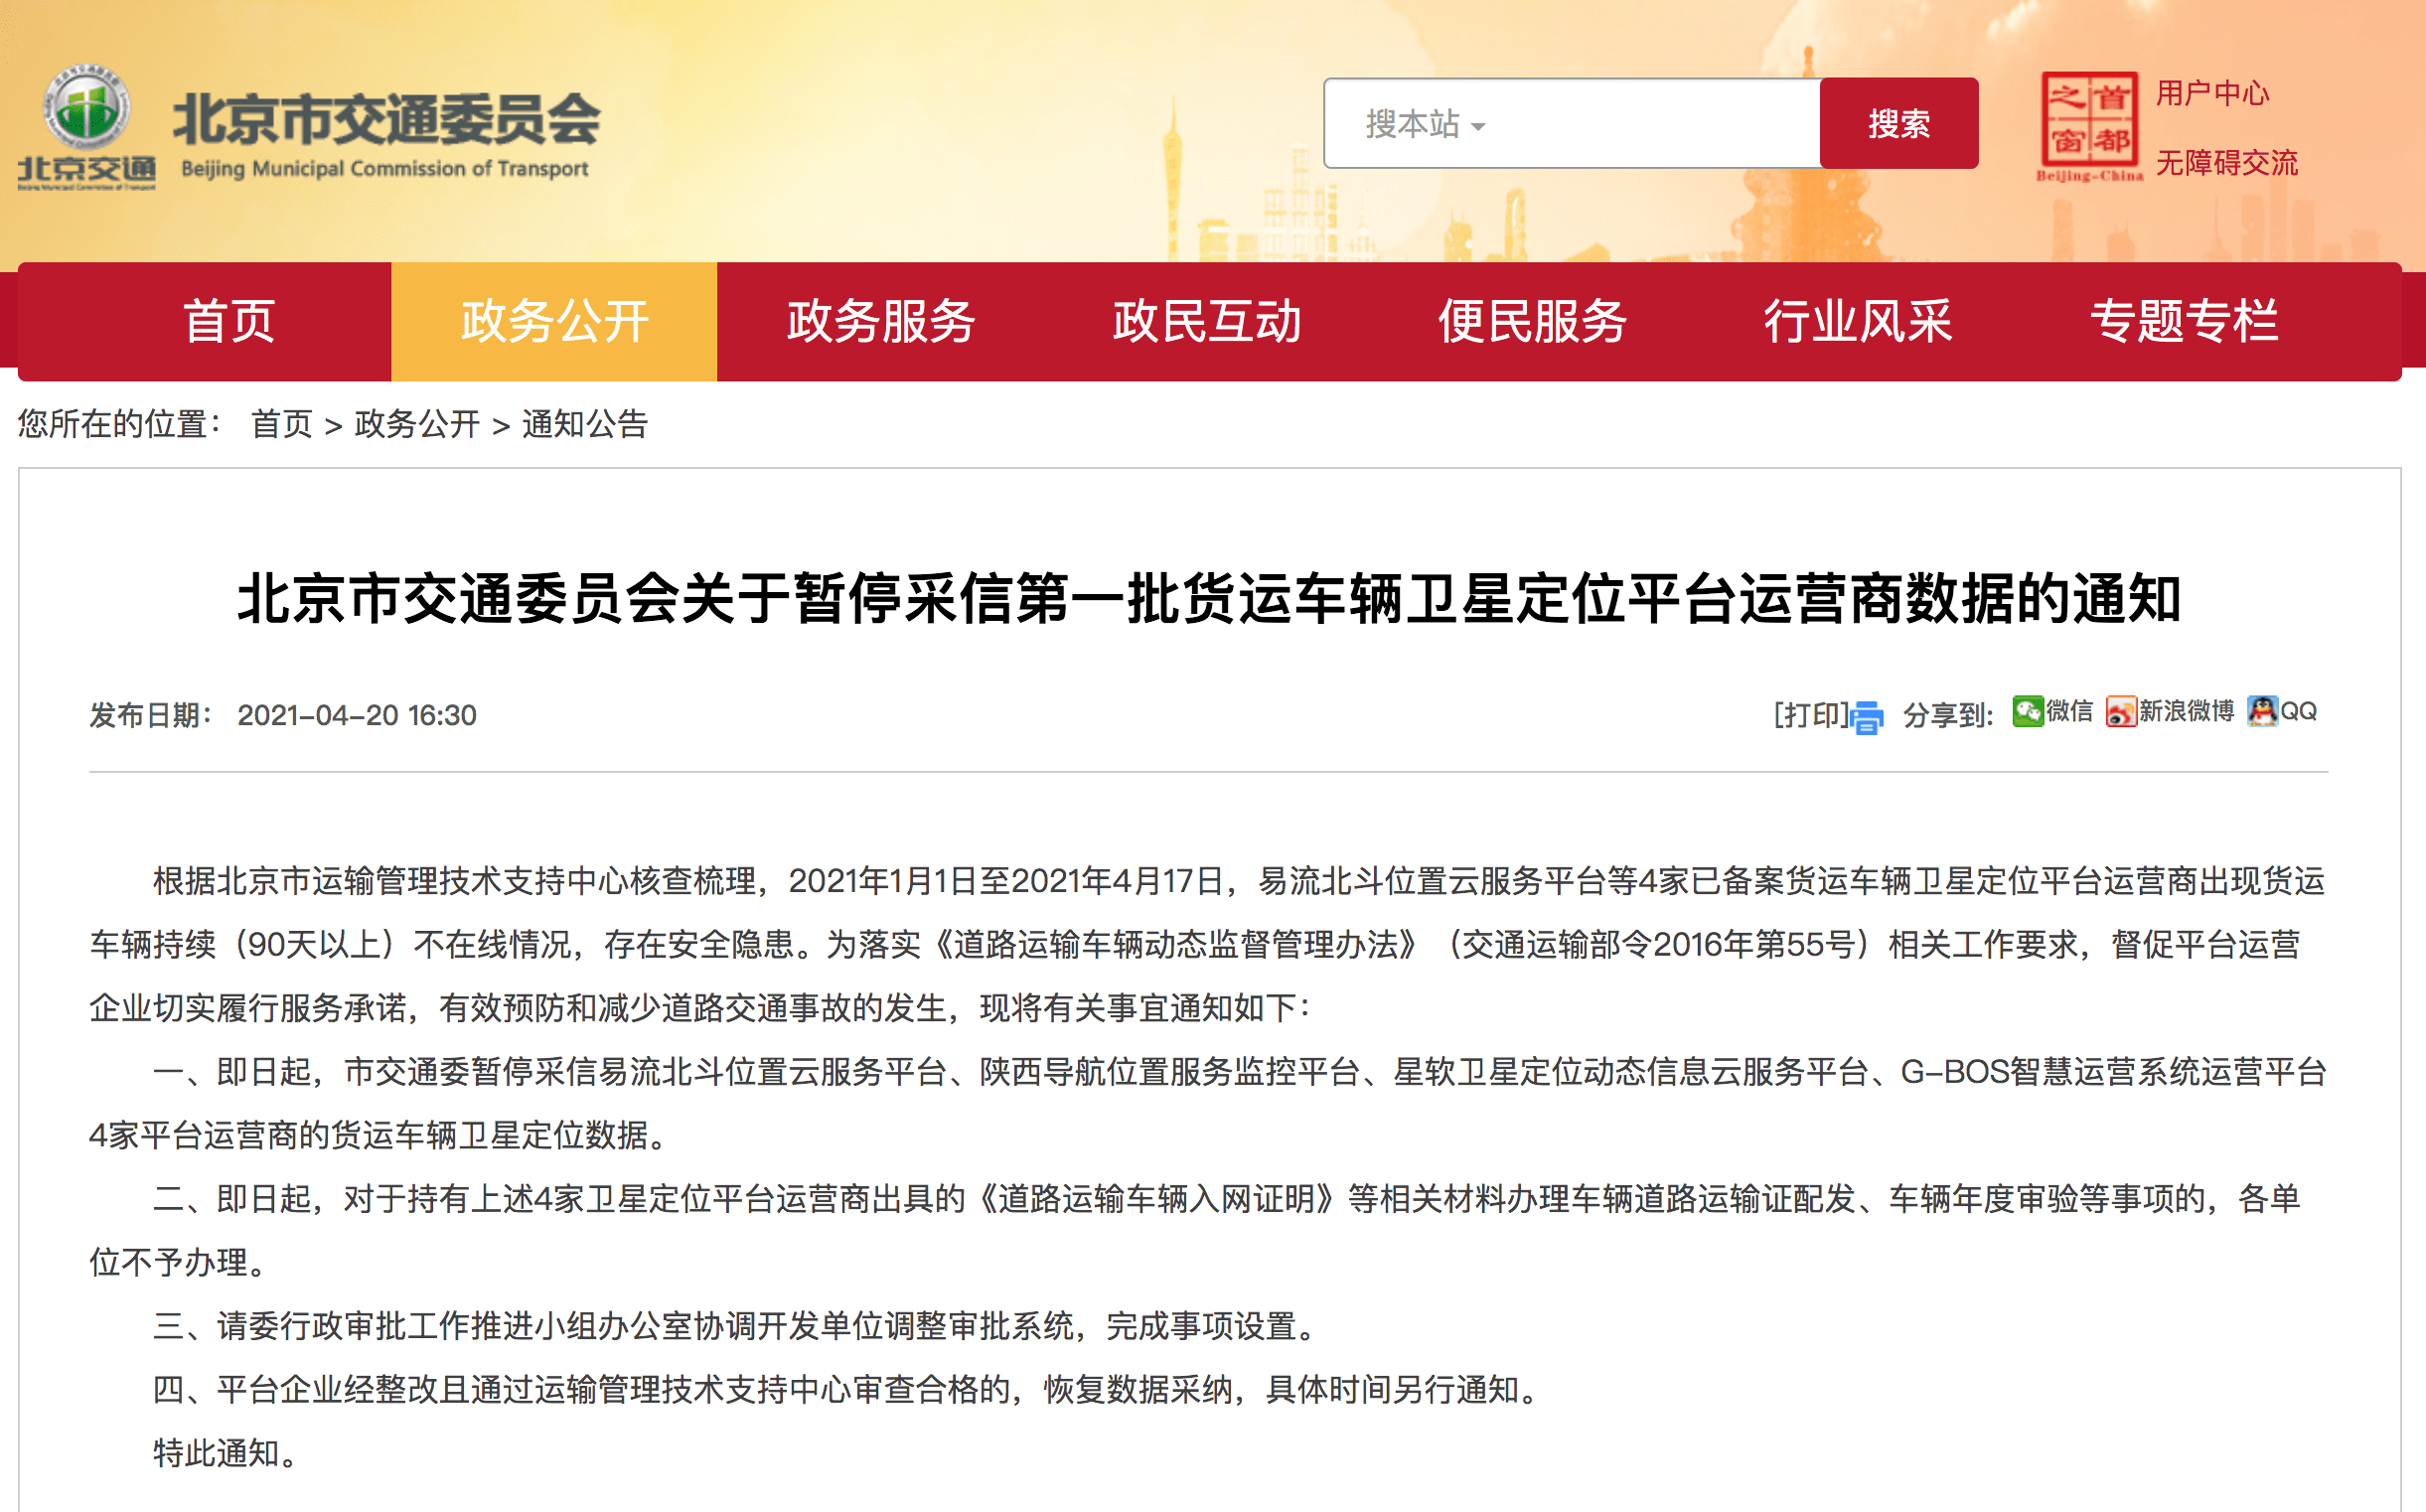 平台|4家货车卫星定位平台长期掉线，北京市交通委暂停采信其数据